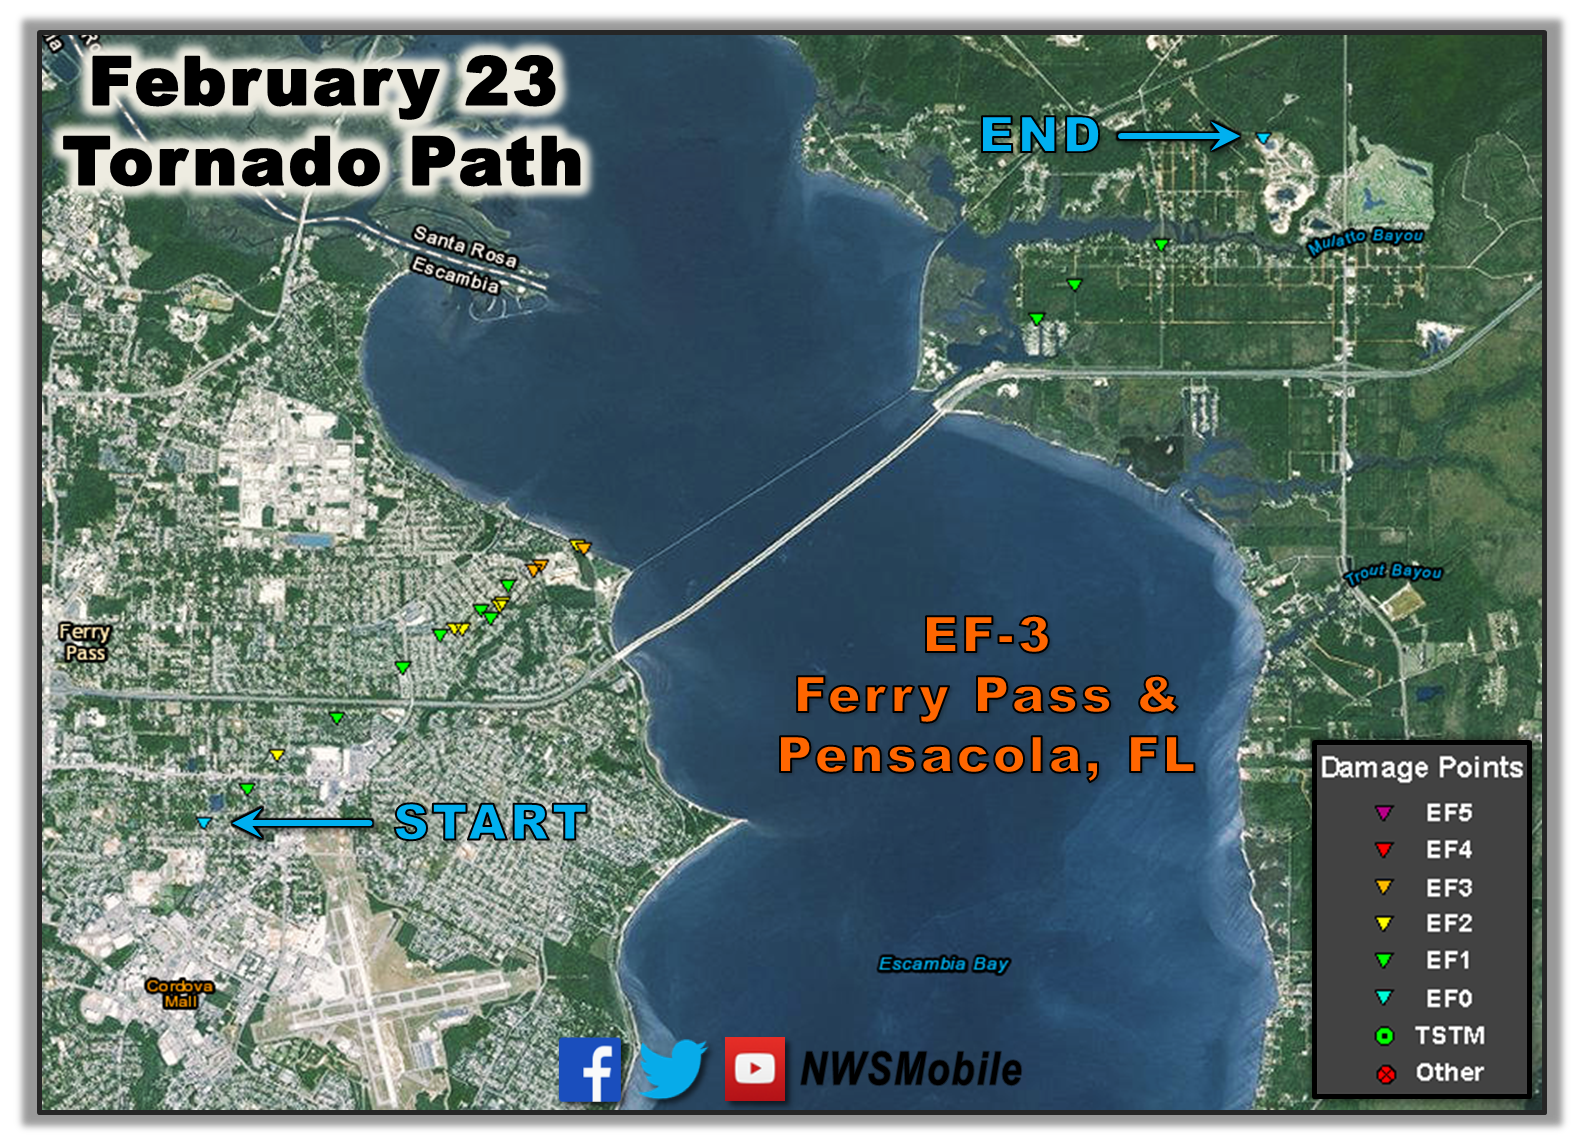 February 23, 2016 Tornado Event1573 x 1137